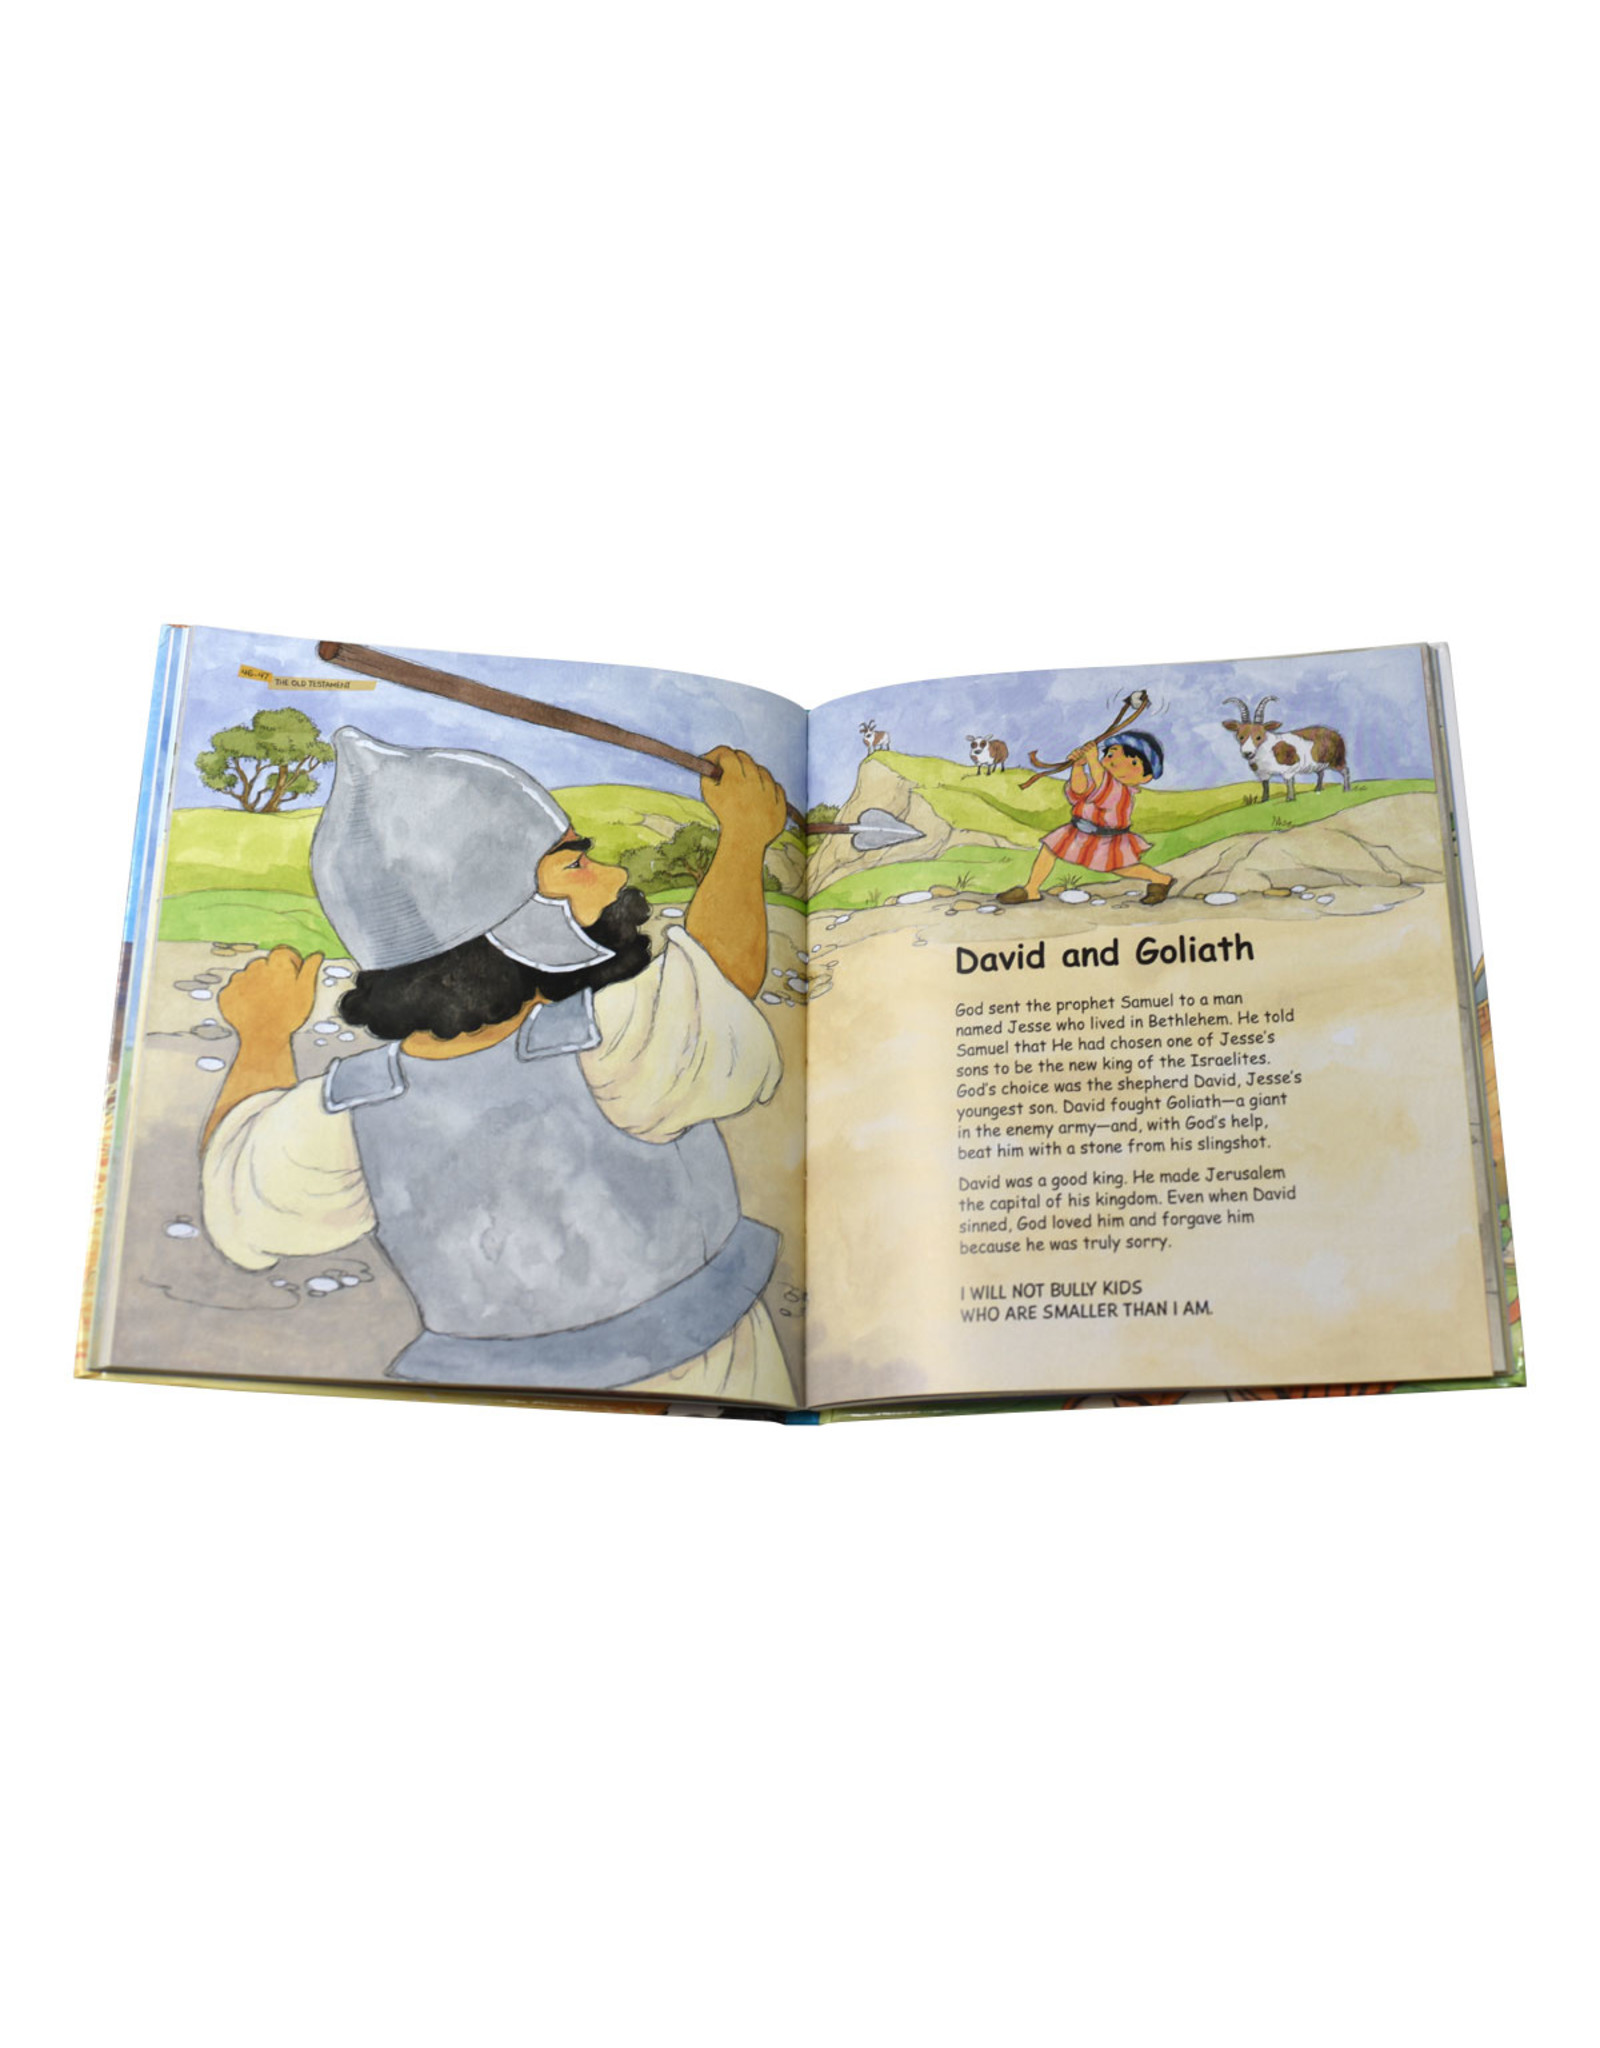 Catholic Book Publishing Bible Stories For Little Catholics